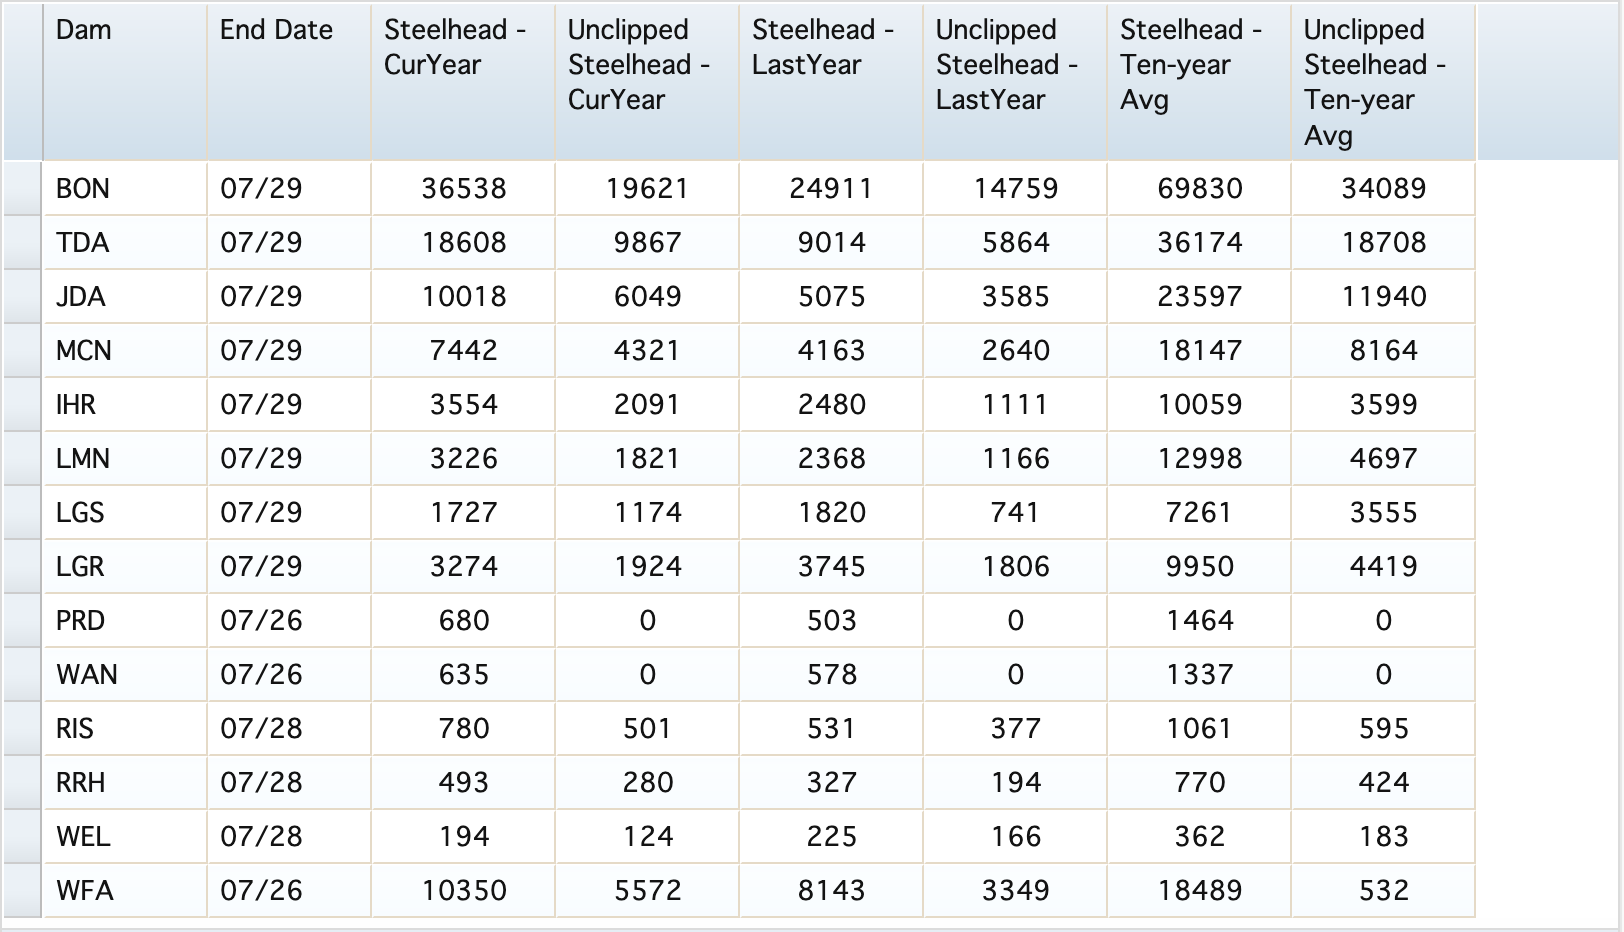 2020 Steelhead YTD Comparison Table